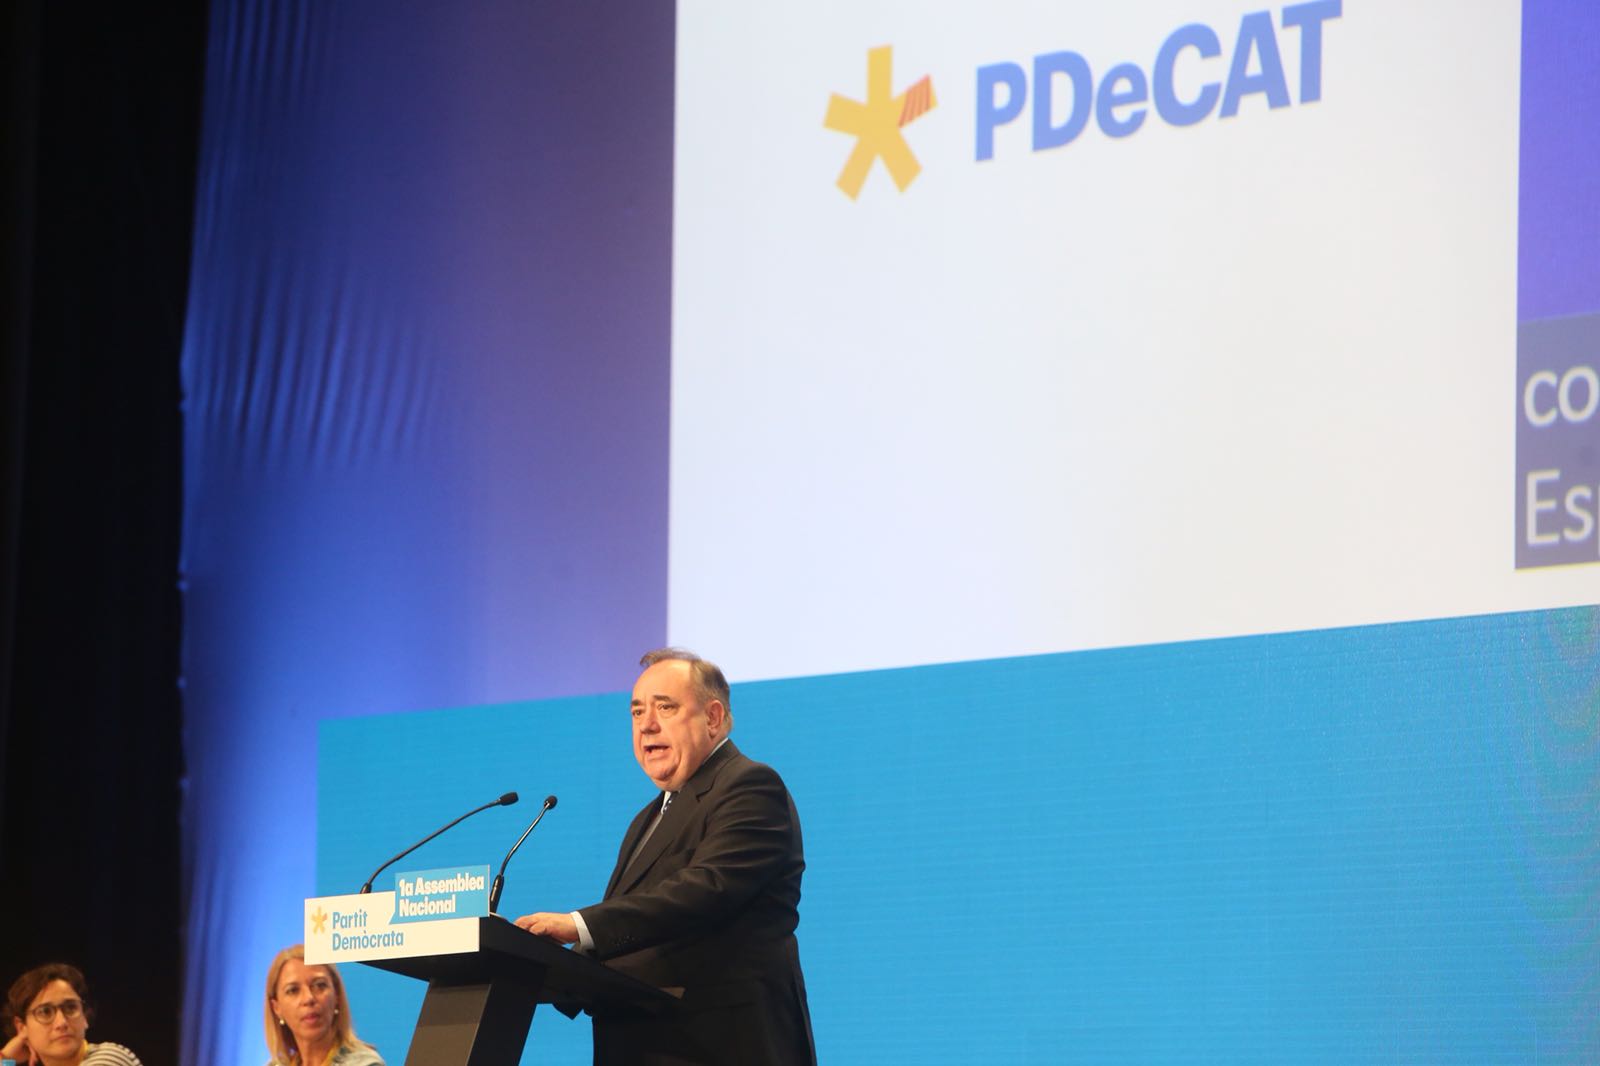 Salmond, en la asamblea del PDeCAT: "Vuestro sueño de libertad nunca morirá"